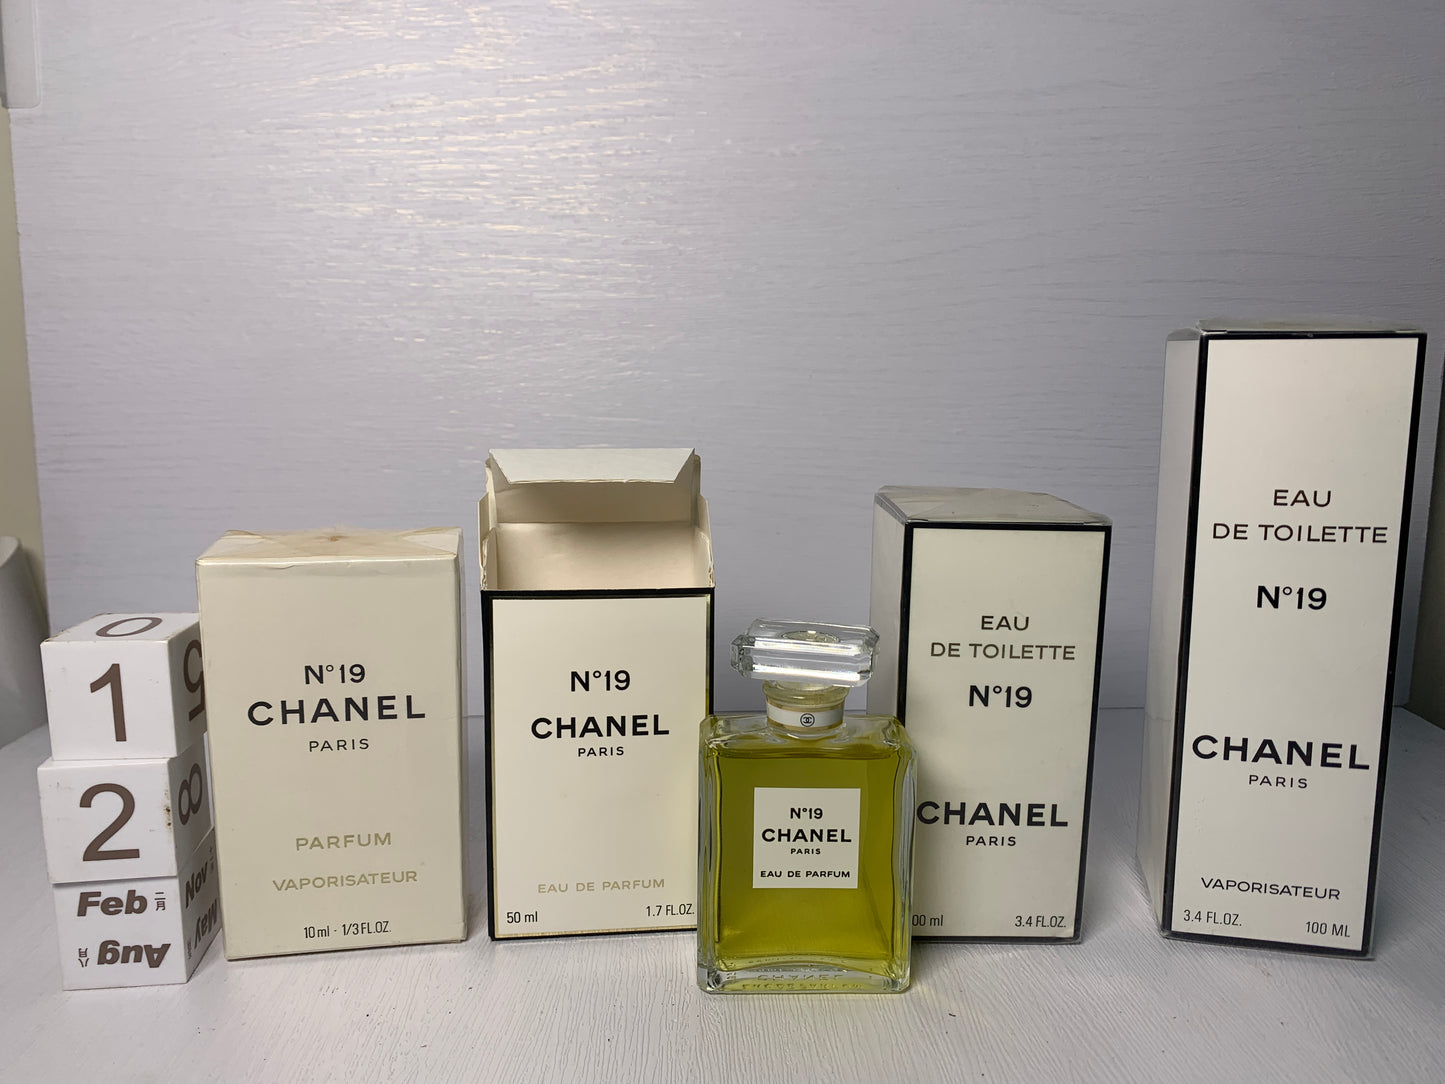 Chanel No. 19 Eau de Toilette 3.4 fl oz